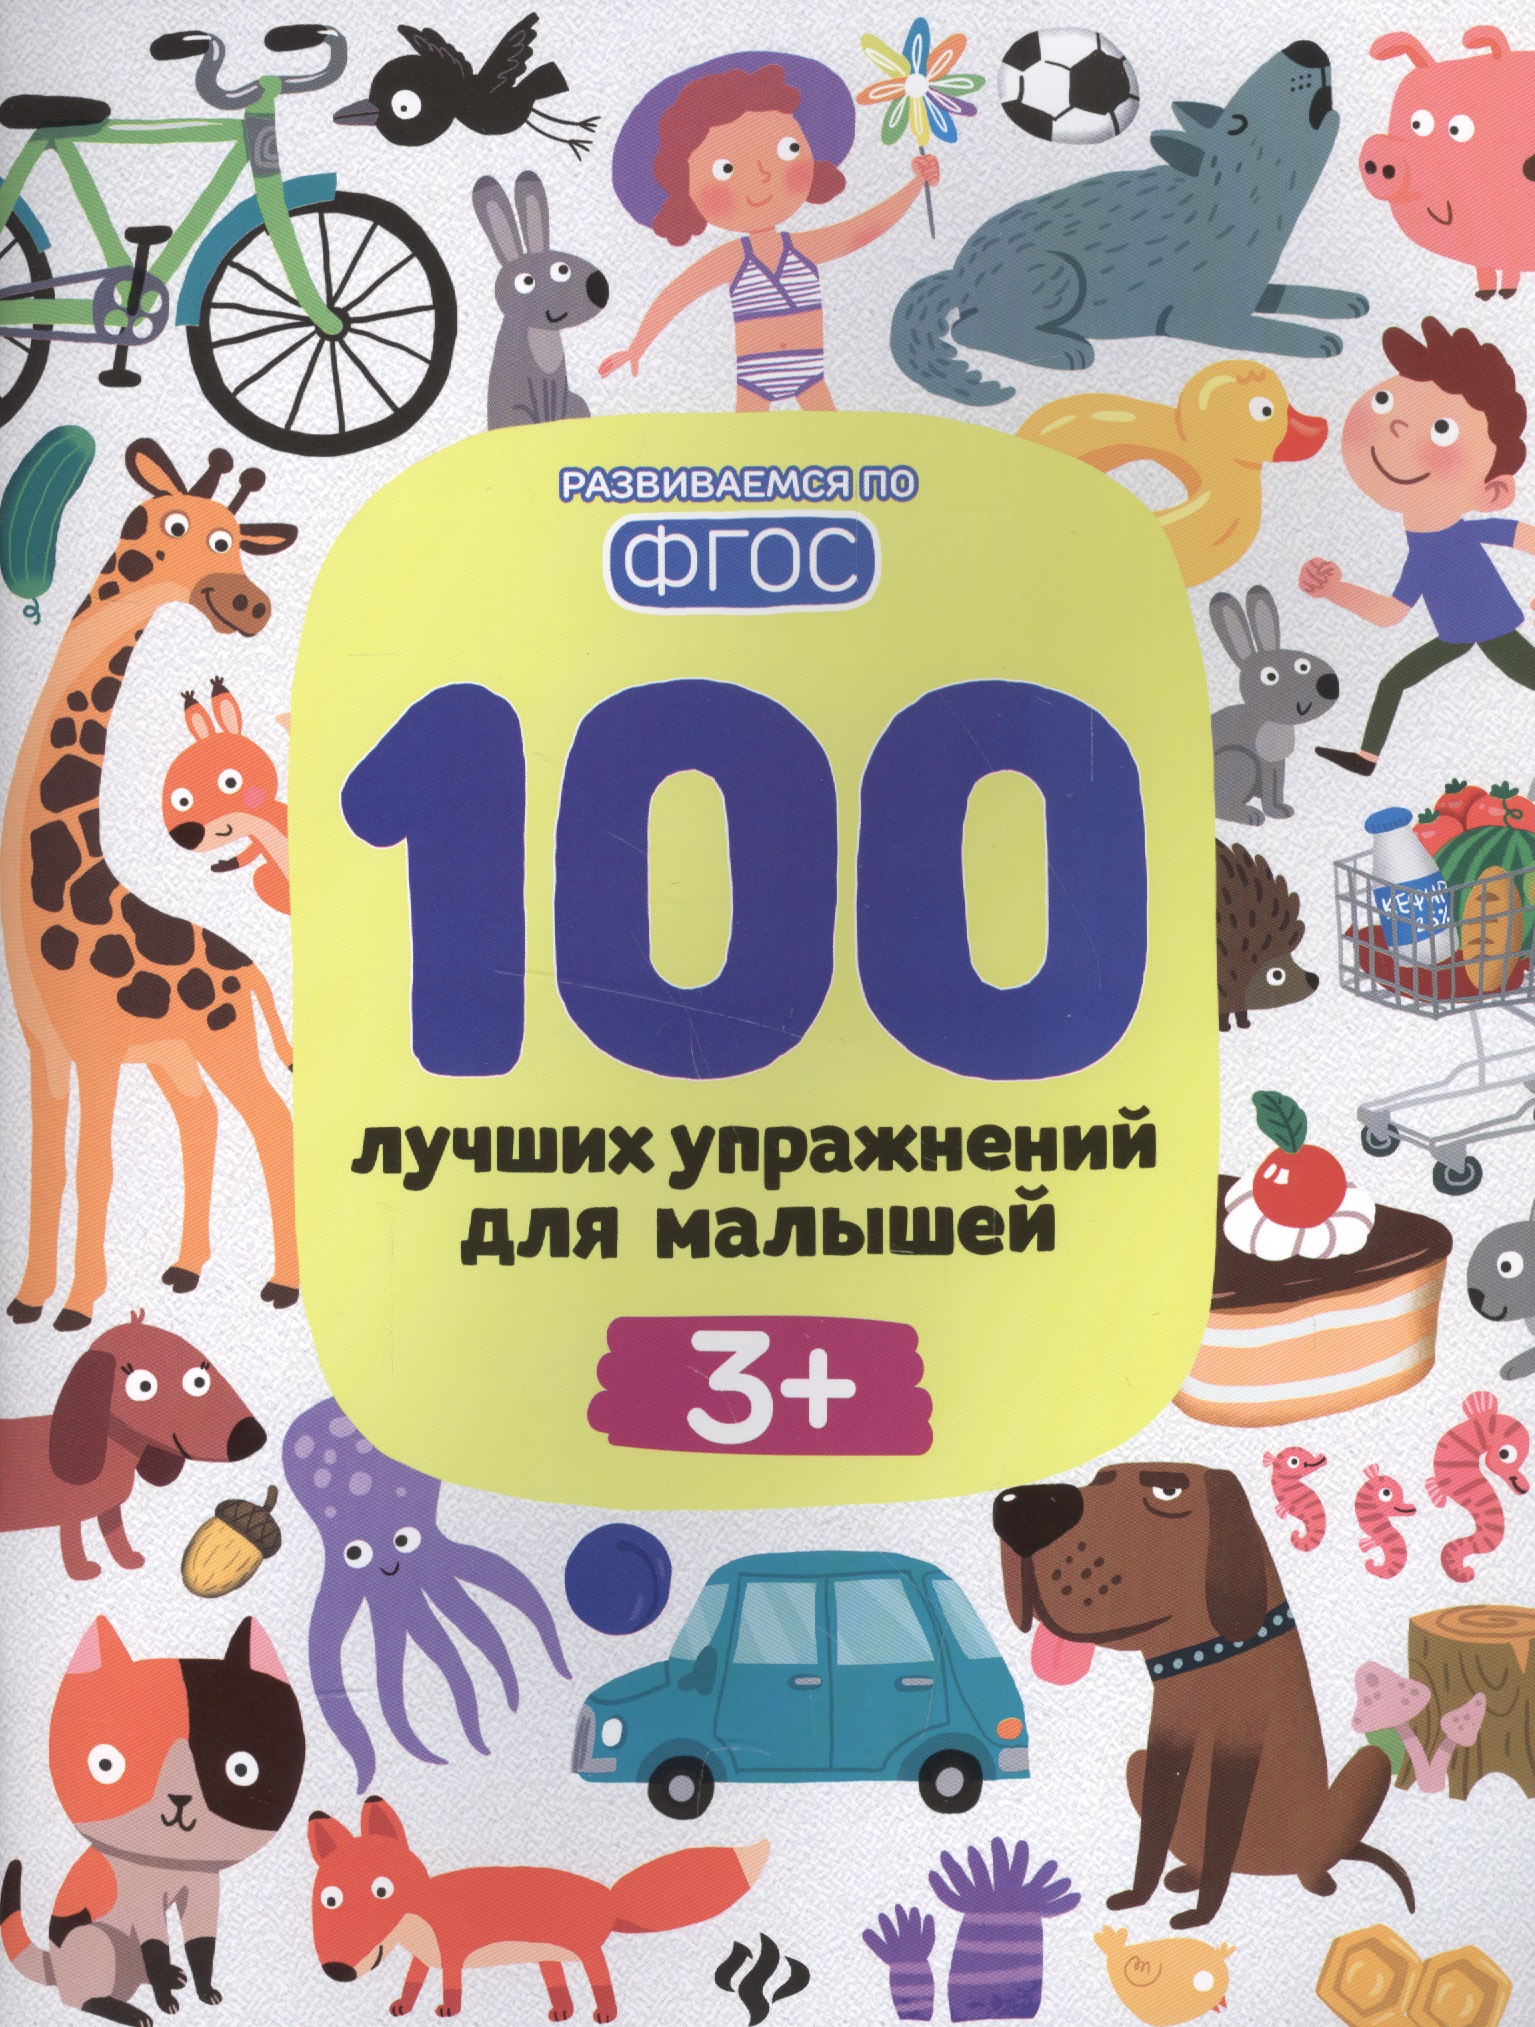 Терентьева Ирина Геннадьевна 100 лучших упражнений для малышей 3+